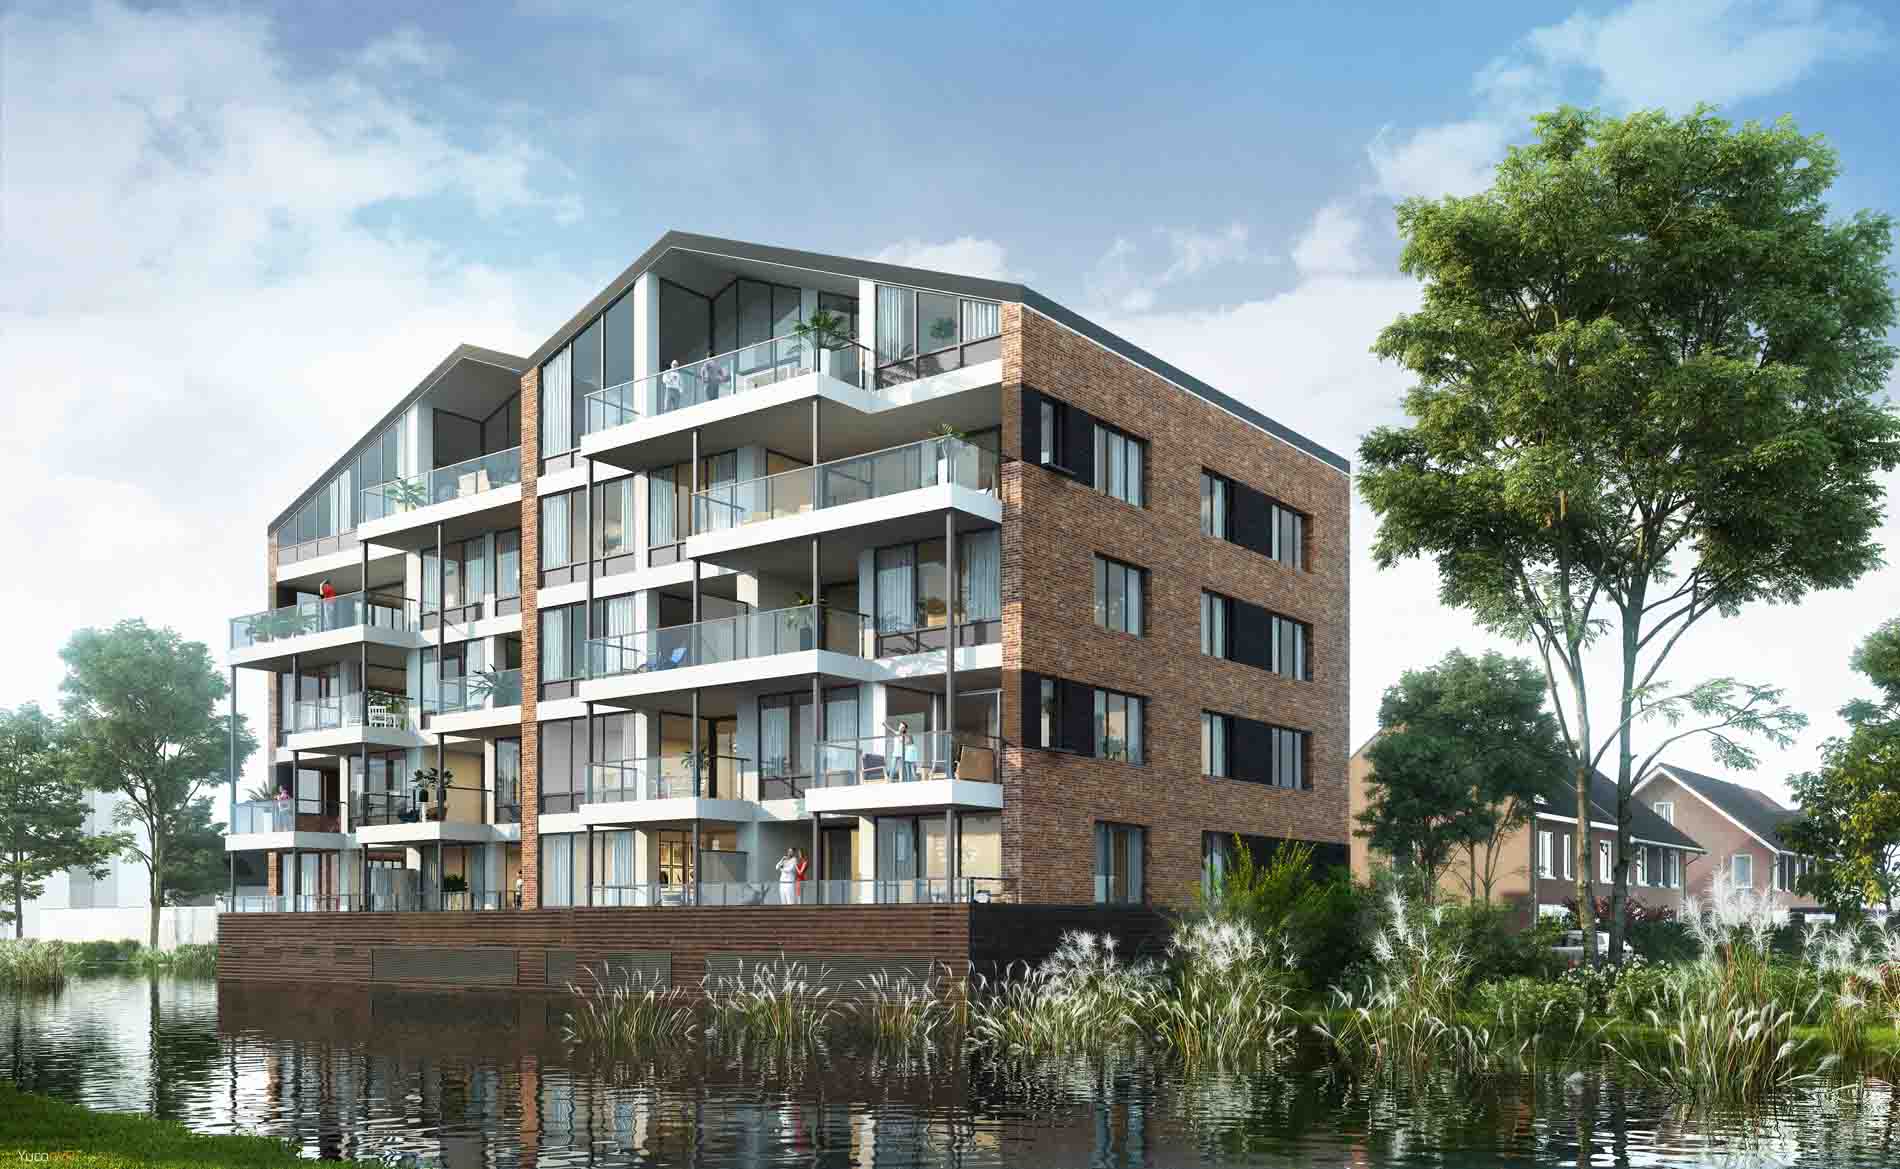 appartementen Simon van Haerlemstraat Heemskerk BBHD architecten dorps moderne architectuur woningen